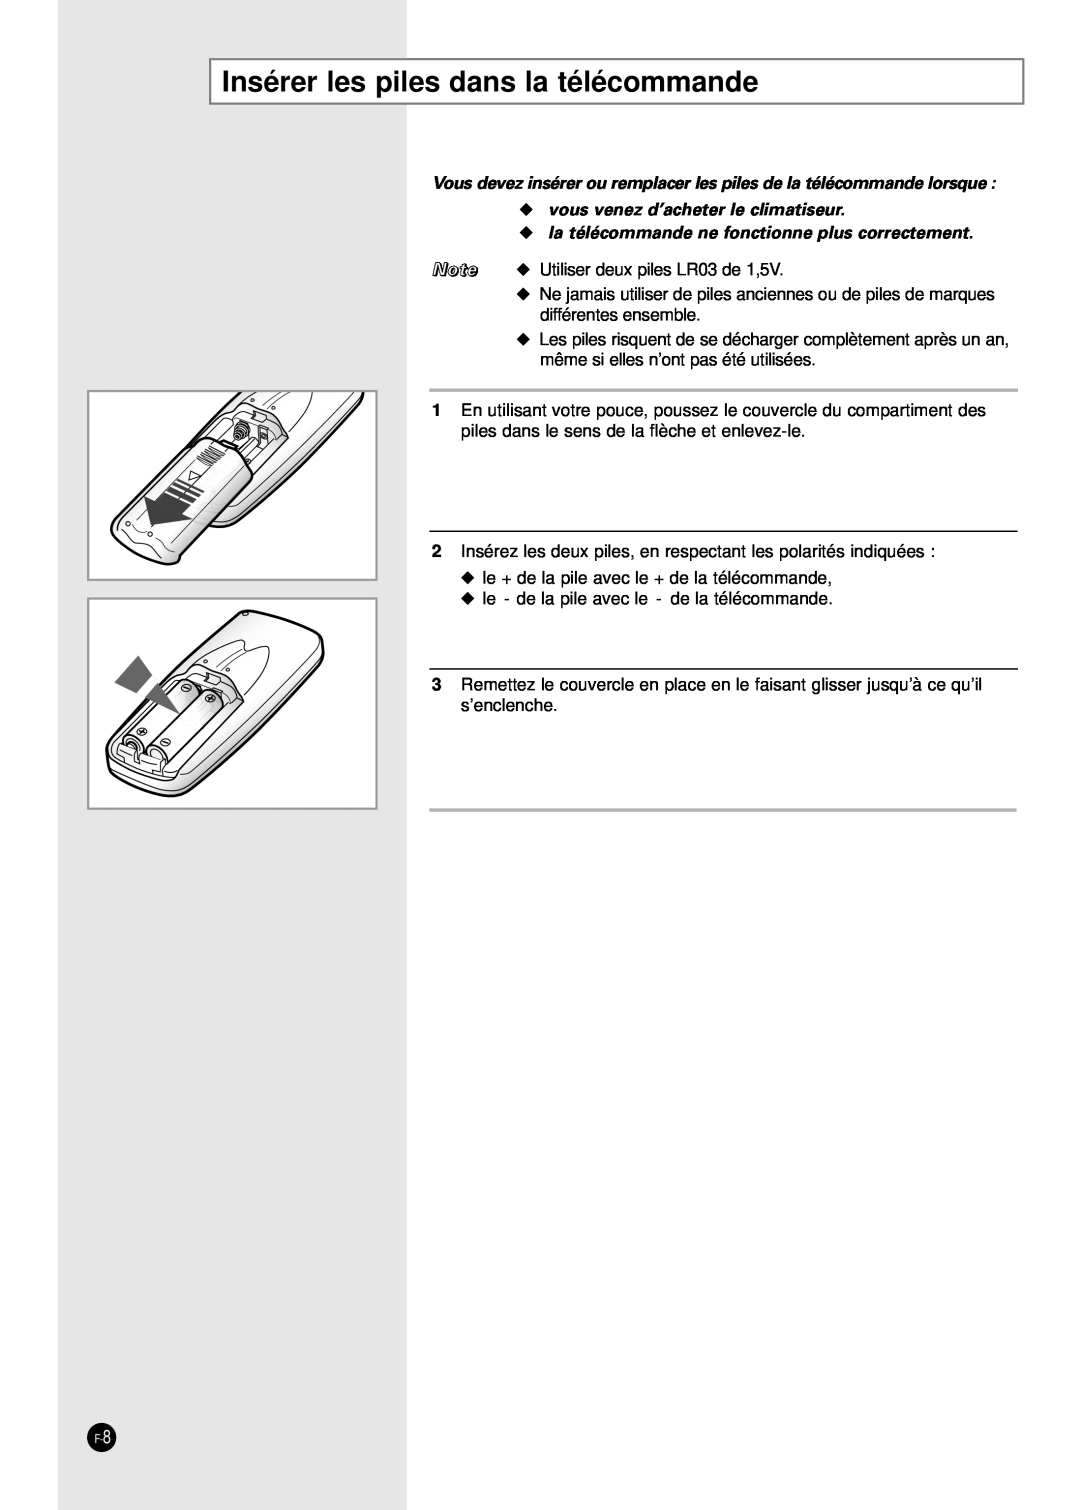 Samsung AD18B1(B2)(C1)(C2)E09 Insérer les piles dans la télécommande, vous venez d’acheter le climatiseur 